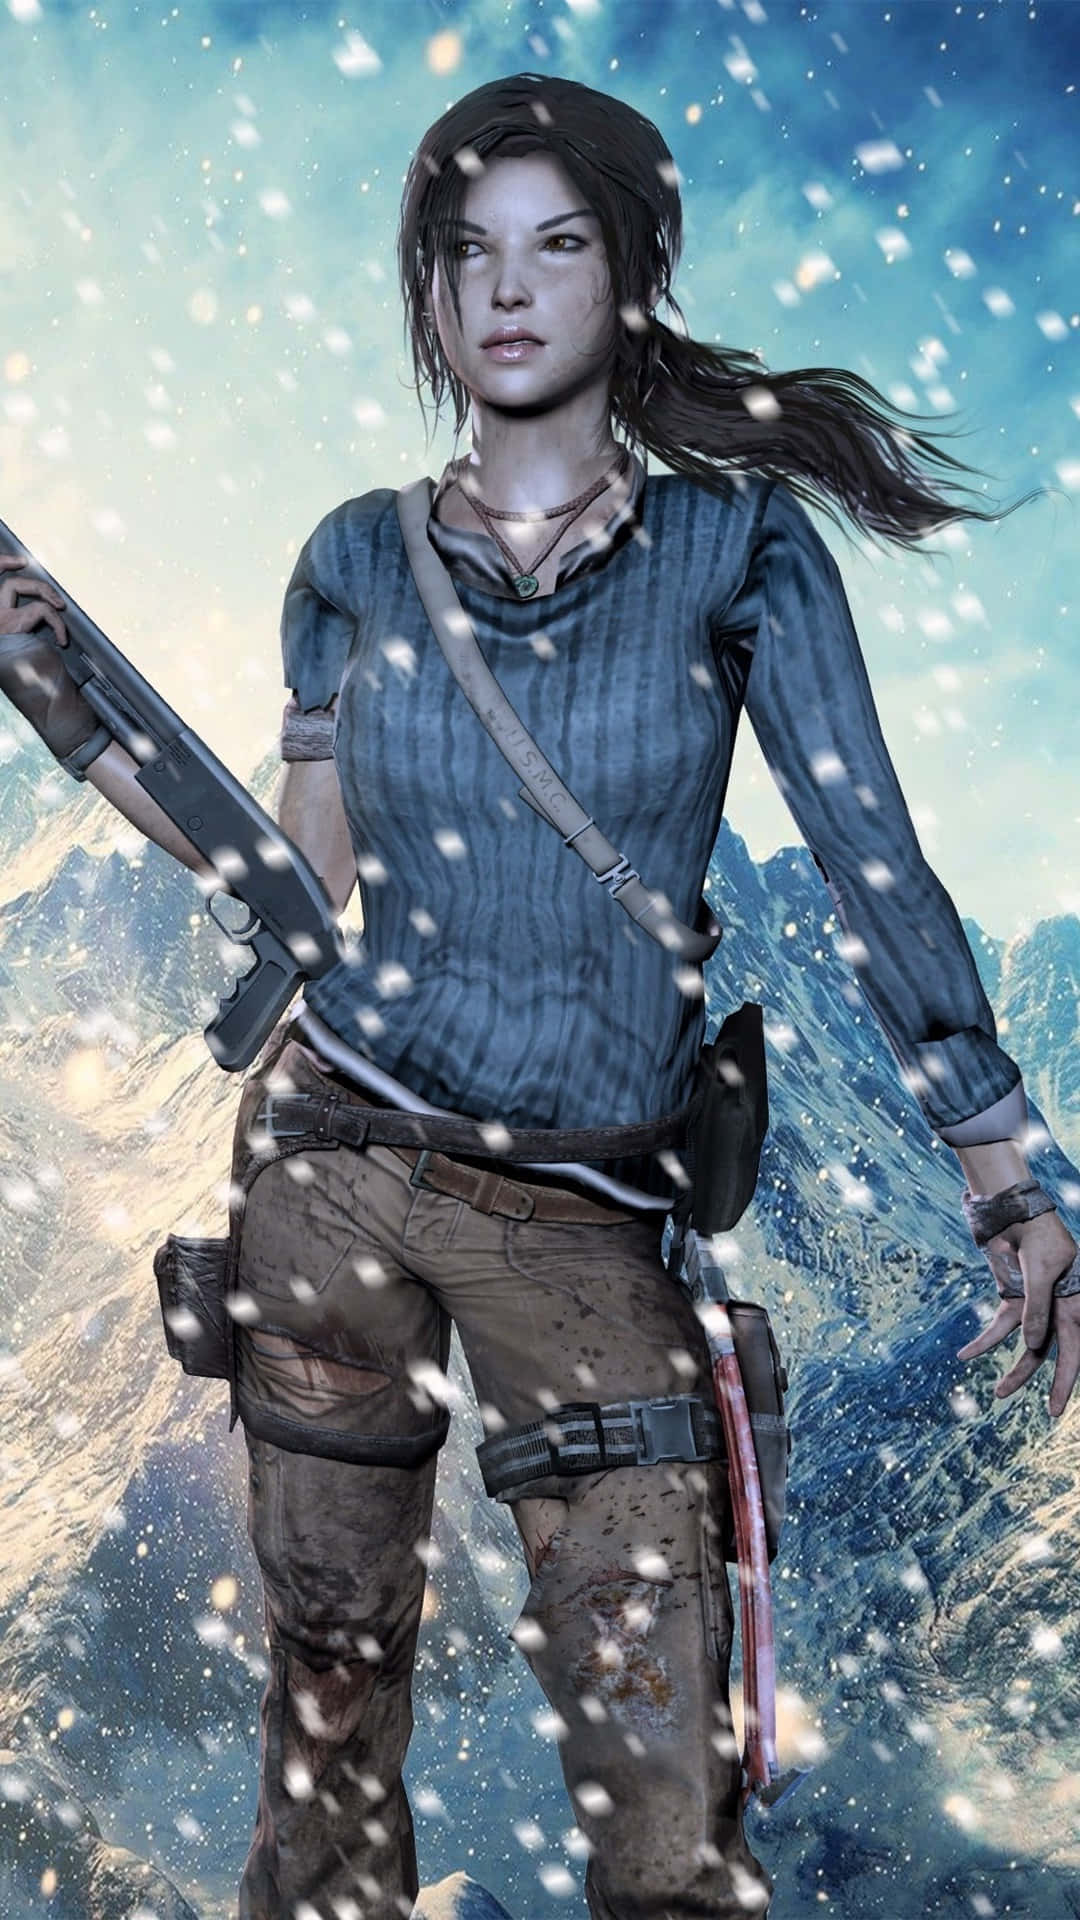 Gördig Redo För Ett Actionfyllt Äventyr Med Tomb Raider Iphone 5s! Wallpaper